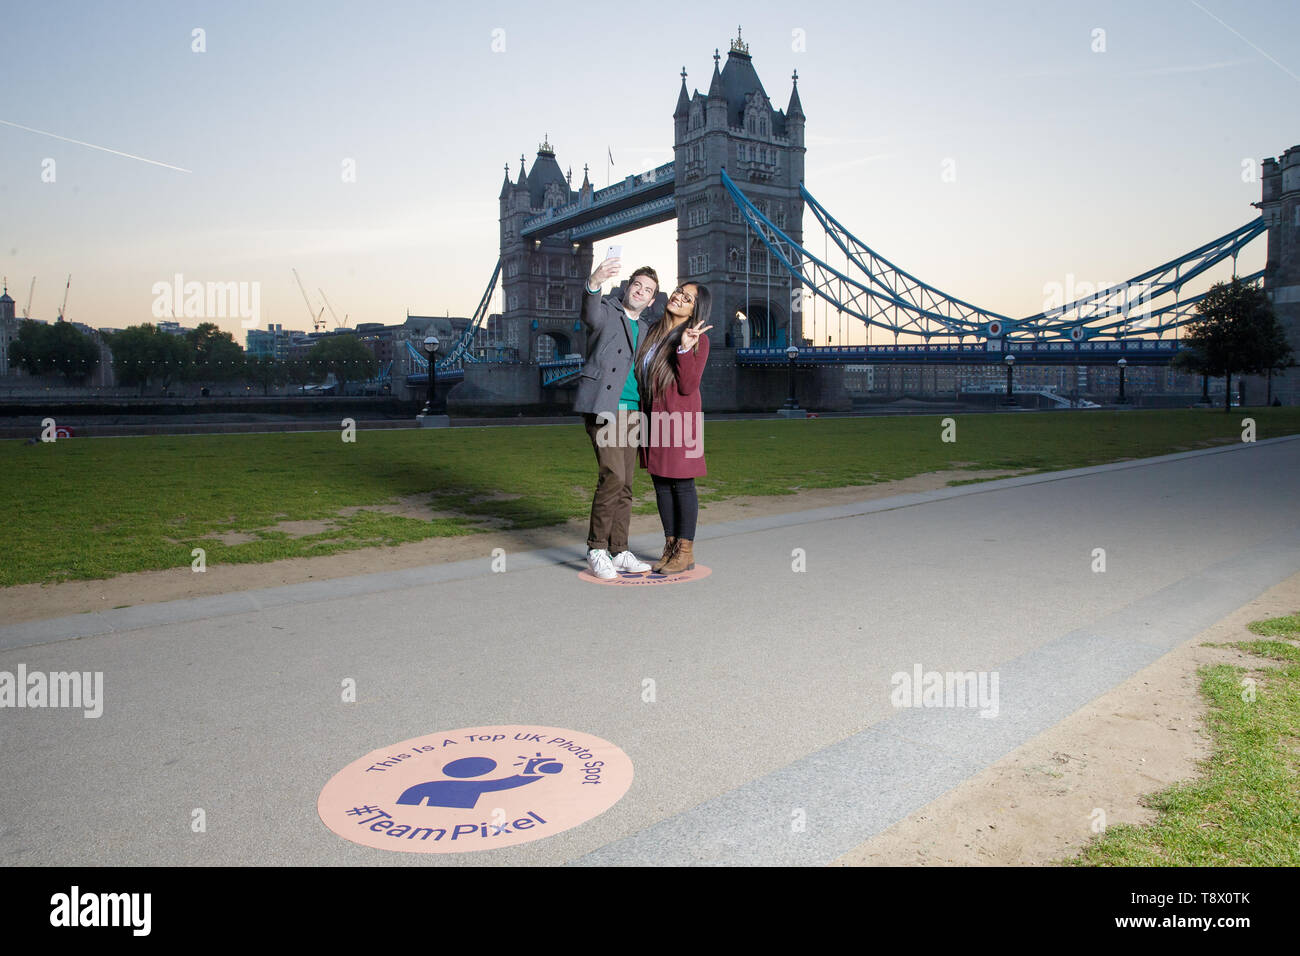 Les touristes ont leur photo prise à Tower Bridge à Londres, que Google a dessiné exactement où vous enclenchez les toiles photographiques pour célébrer le lancement de pixel 3a. Banque D'Images